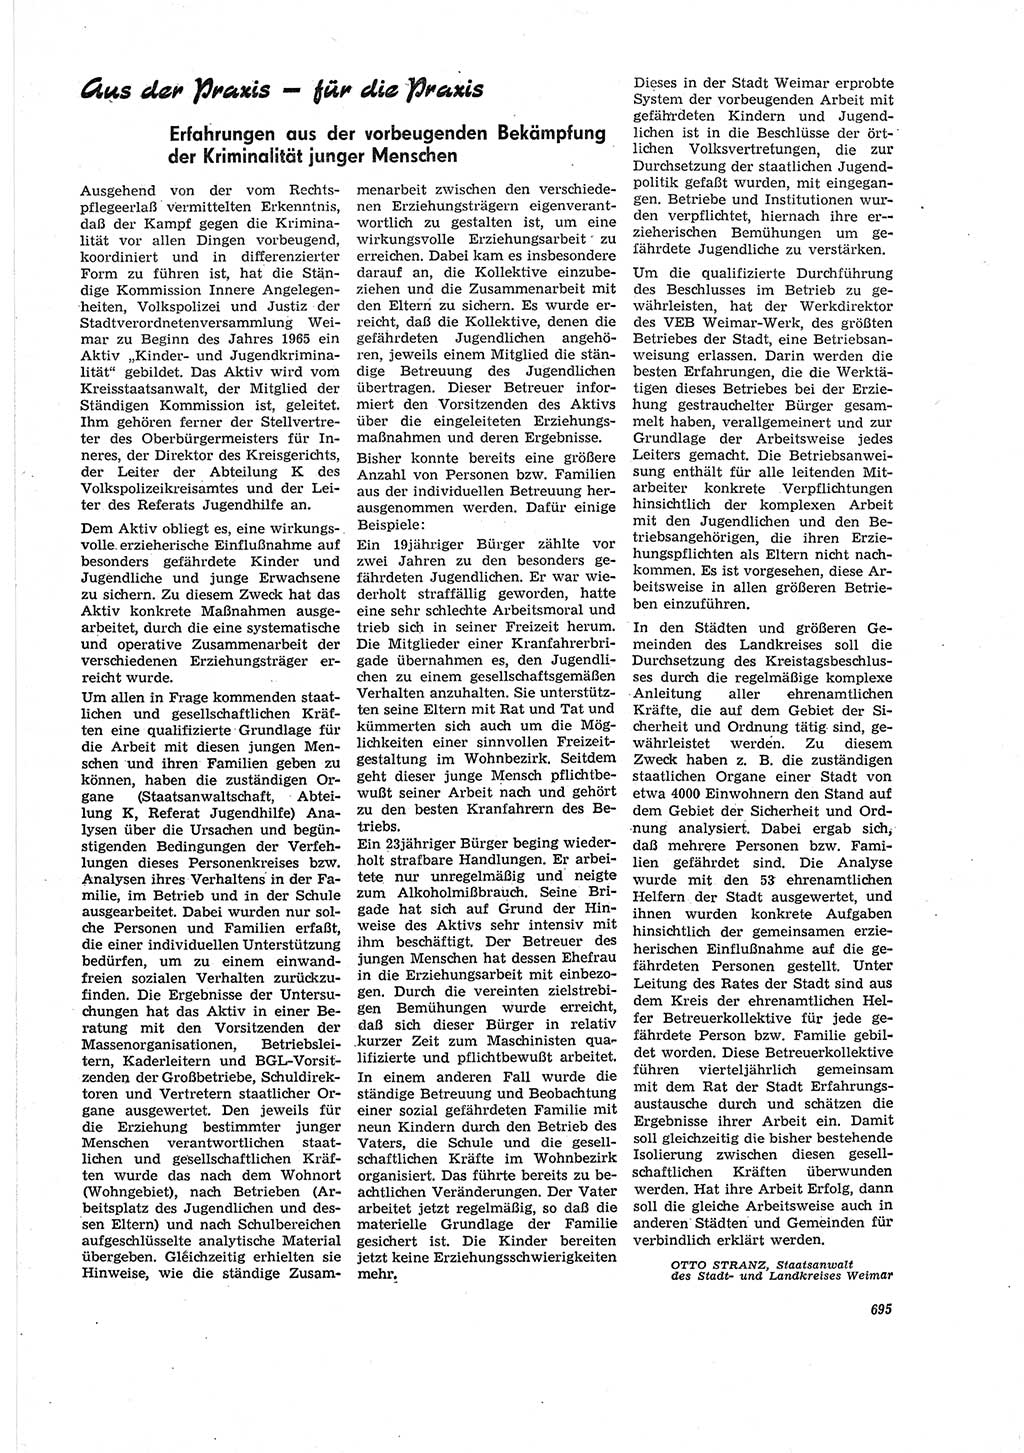 Neue Justiz (NJ), Zeitschrift für Recht und Rechtswissenschaft [Deutsche Demokratische Republik (DDR)], 20. Jahrgang 1966, Seite 695 (NJ DDR 1966, S. 695)